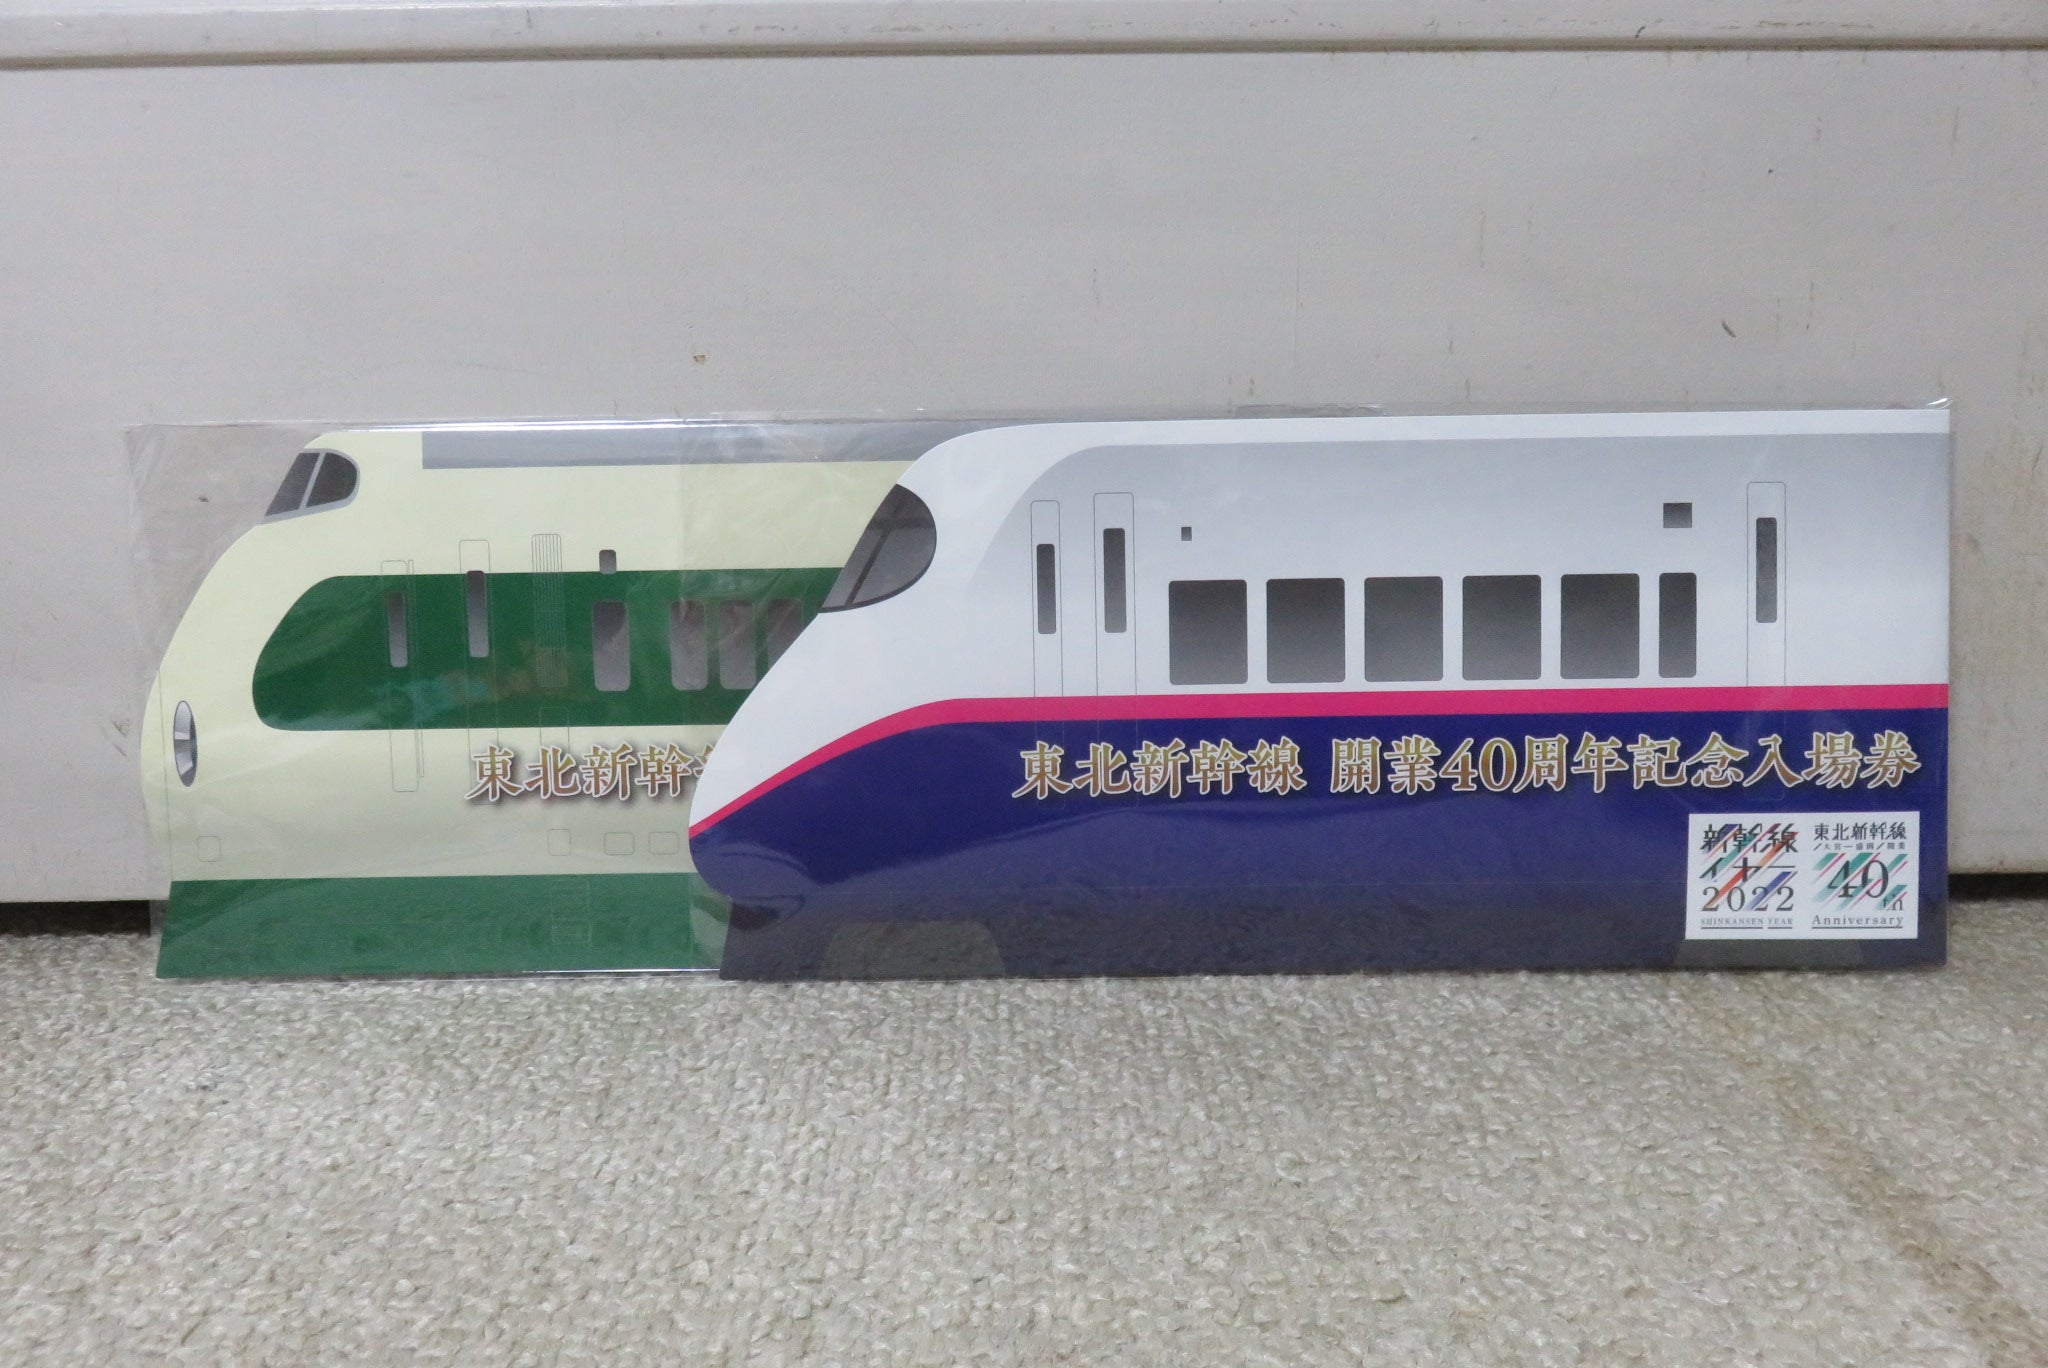 東北新幹線 開業40周年 記念入場券♪ | New レゴシティのブログ